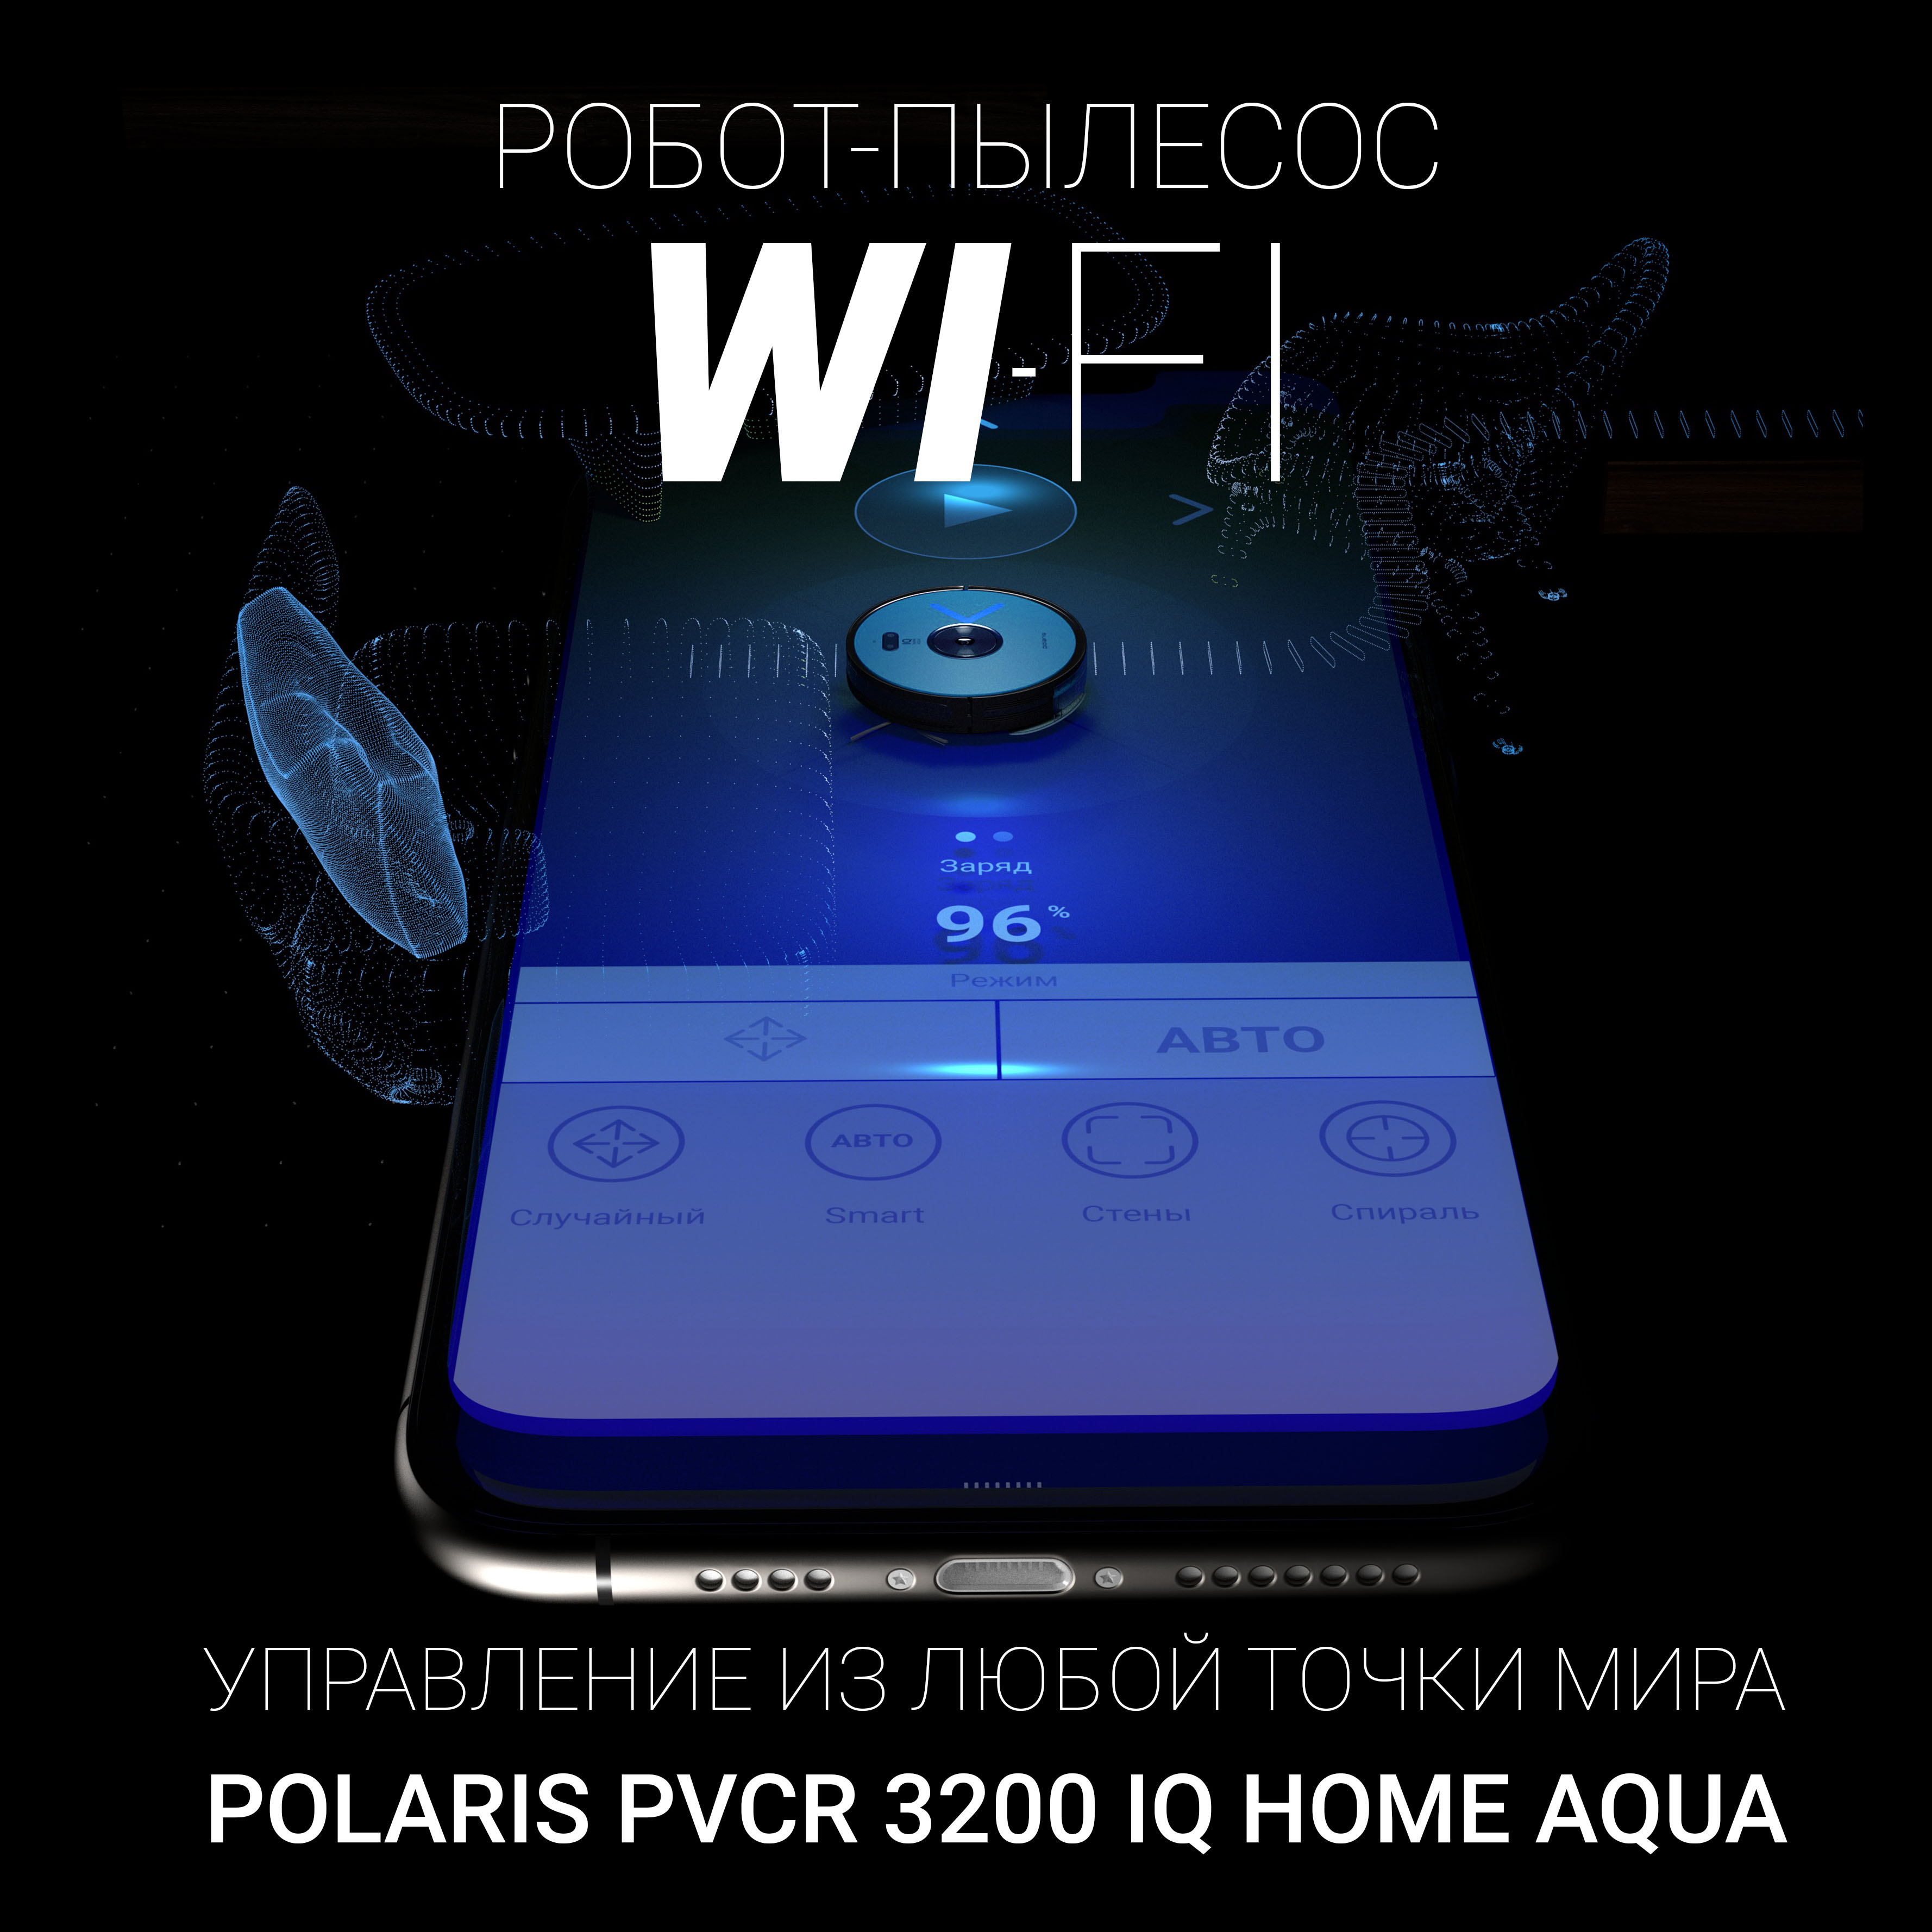 Polaris PVCR 3200 IQ Home Aqua Красноярск